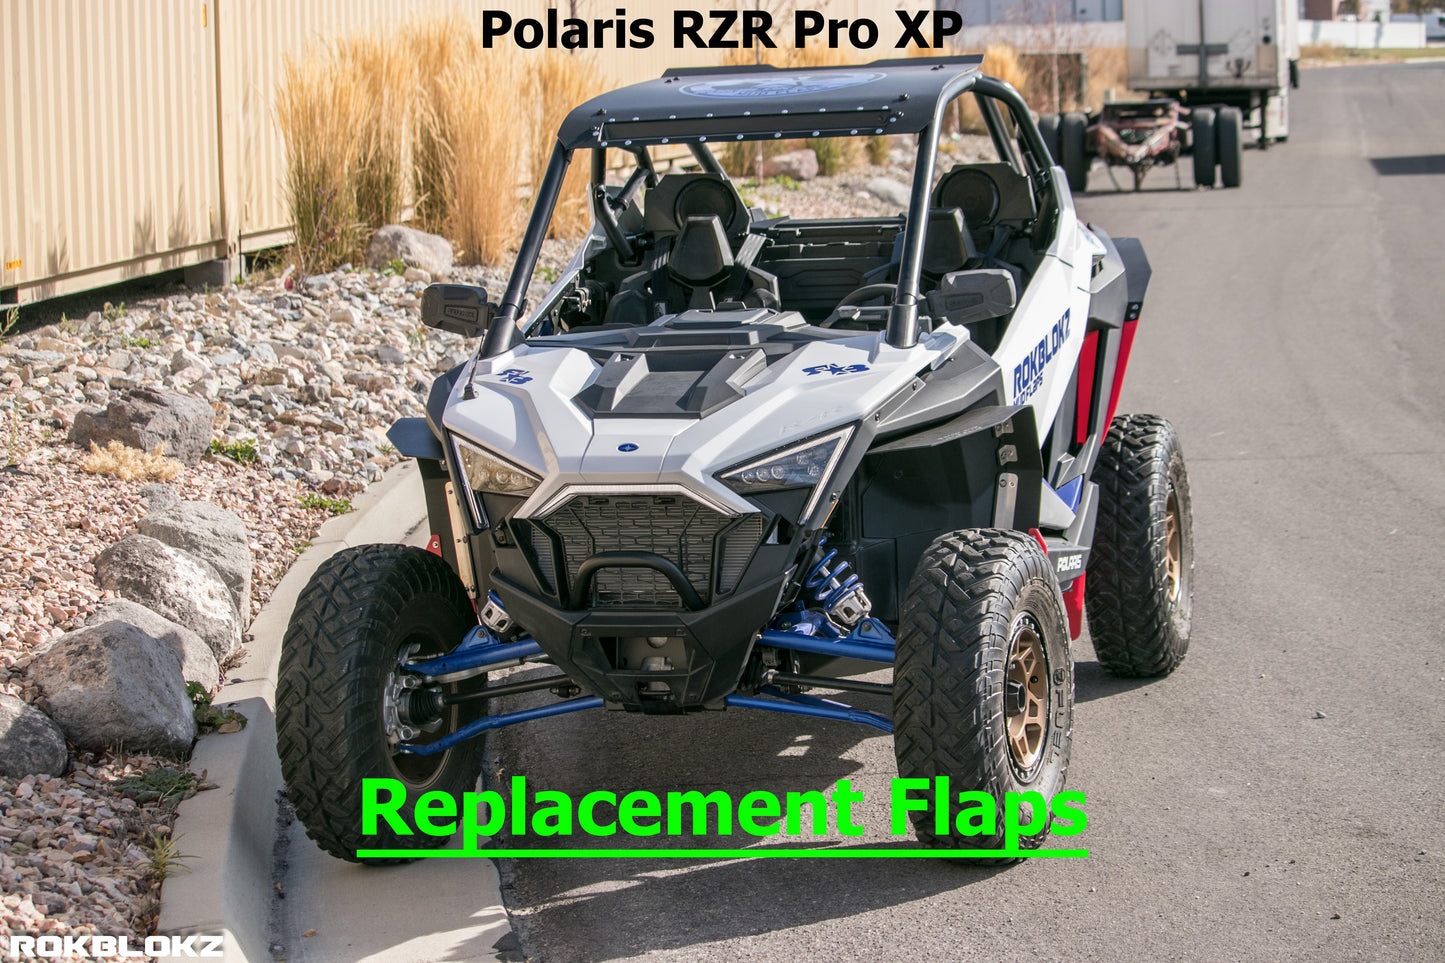 Polaris RZR Pro XP Mud Flap/Fender Extension Replacement Parts